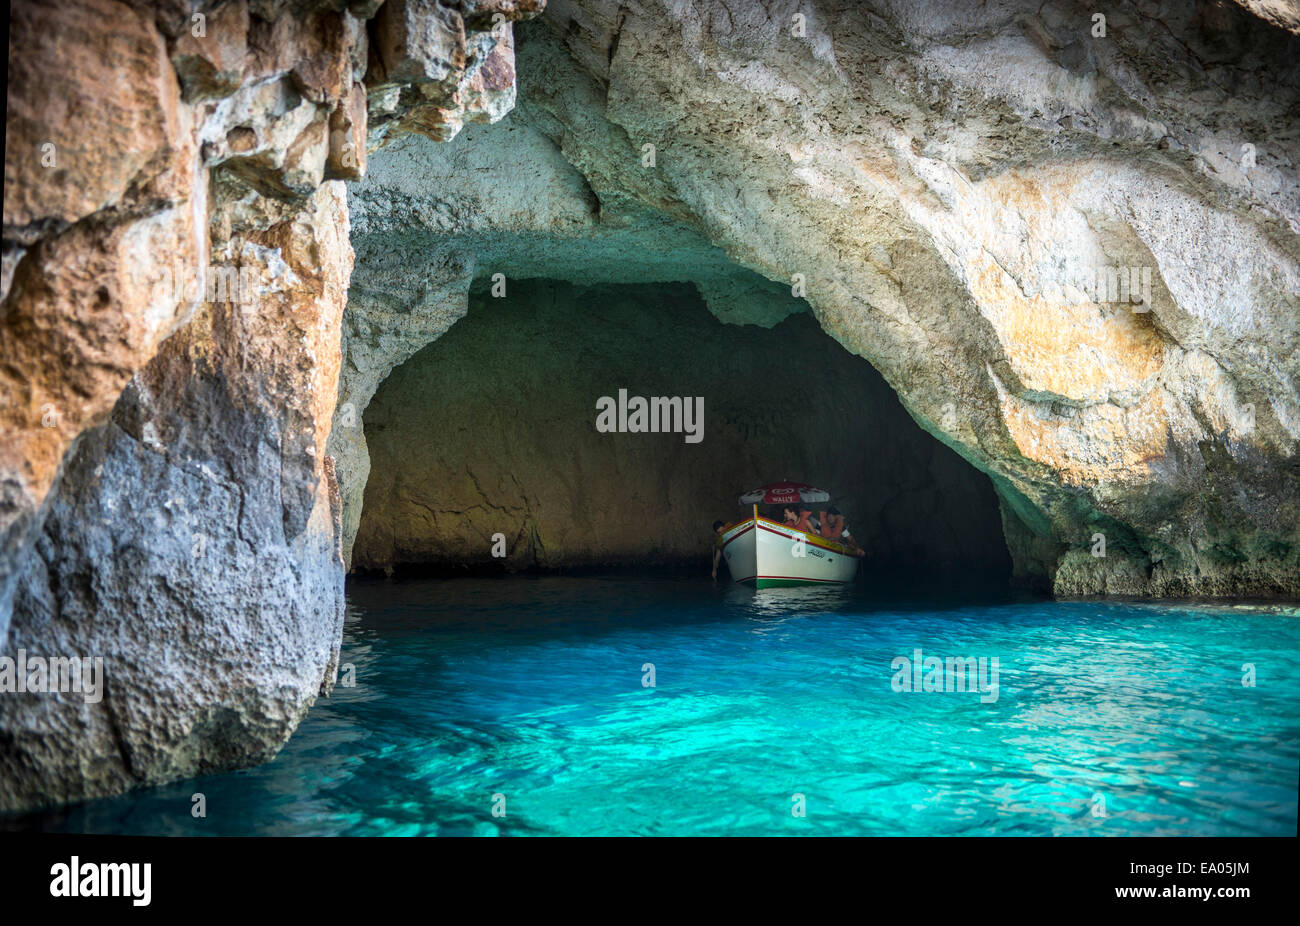 Tourist boat in the Blue Grotto sea caves in Malta Stock Photo - Alamy